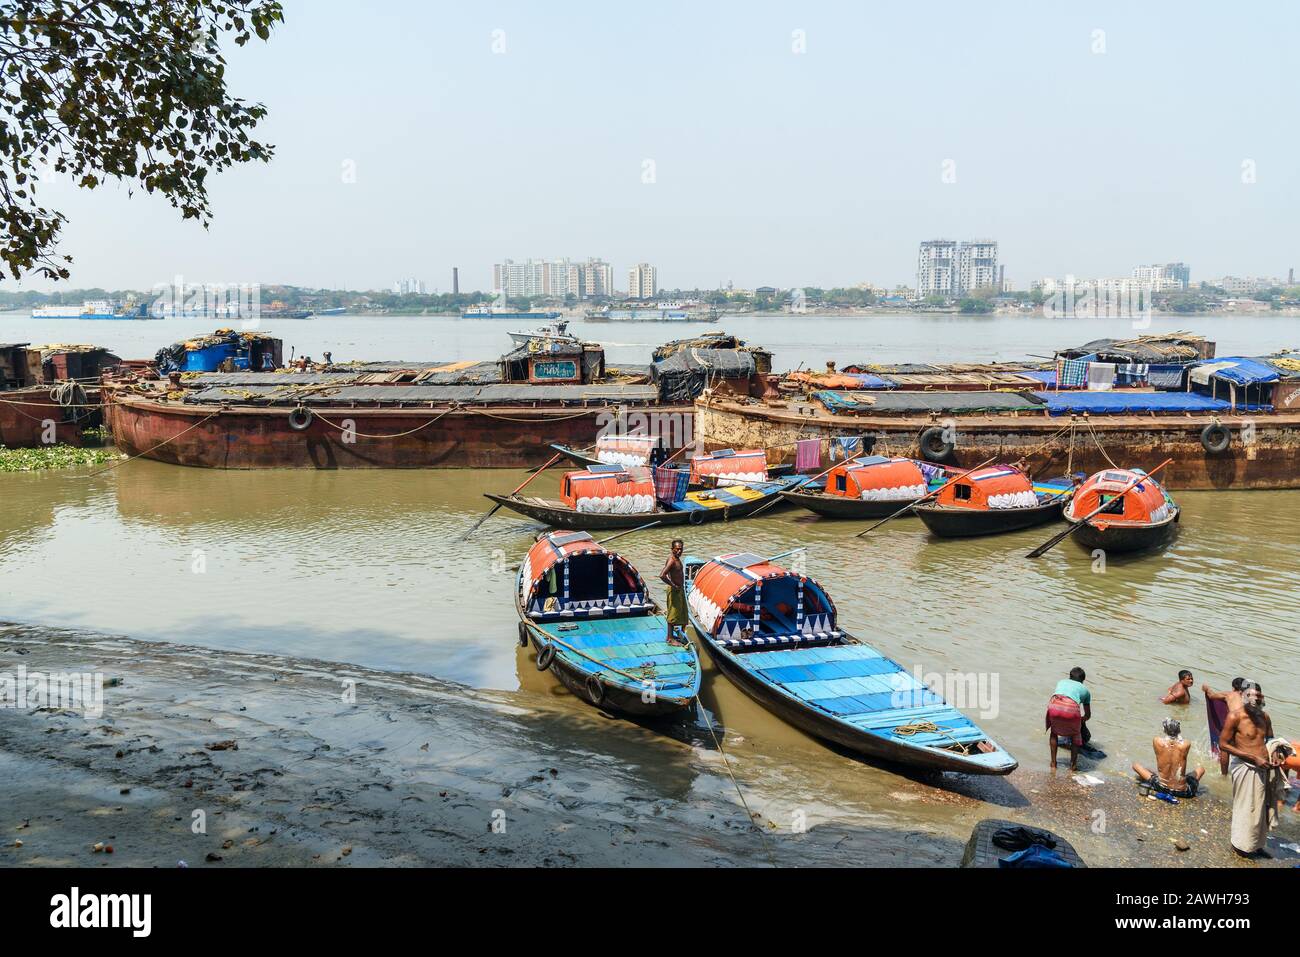 Bateaux de pêche traditionnels en bois dans la rivière Hoogghly ou Ganga à Kolkata. Inde Banque D'Images